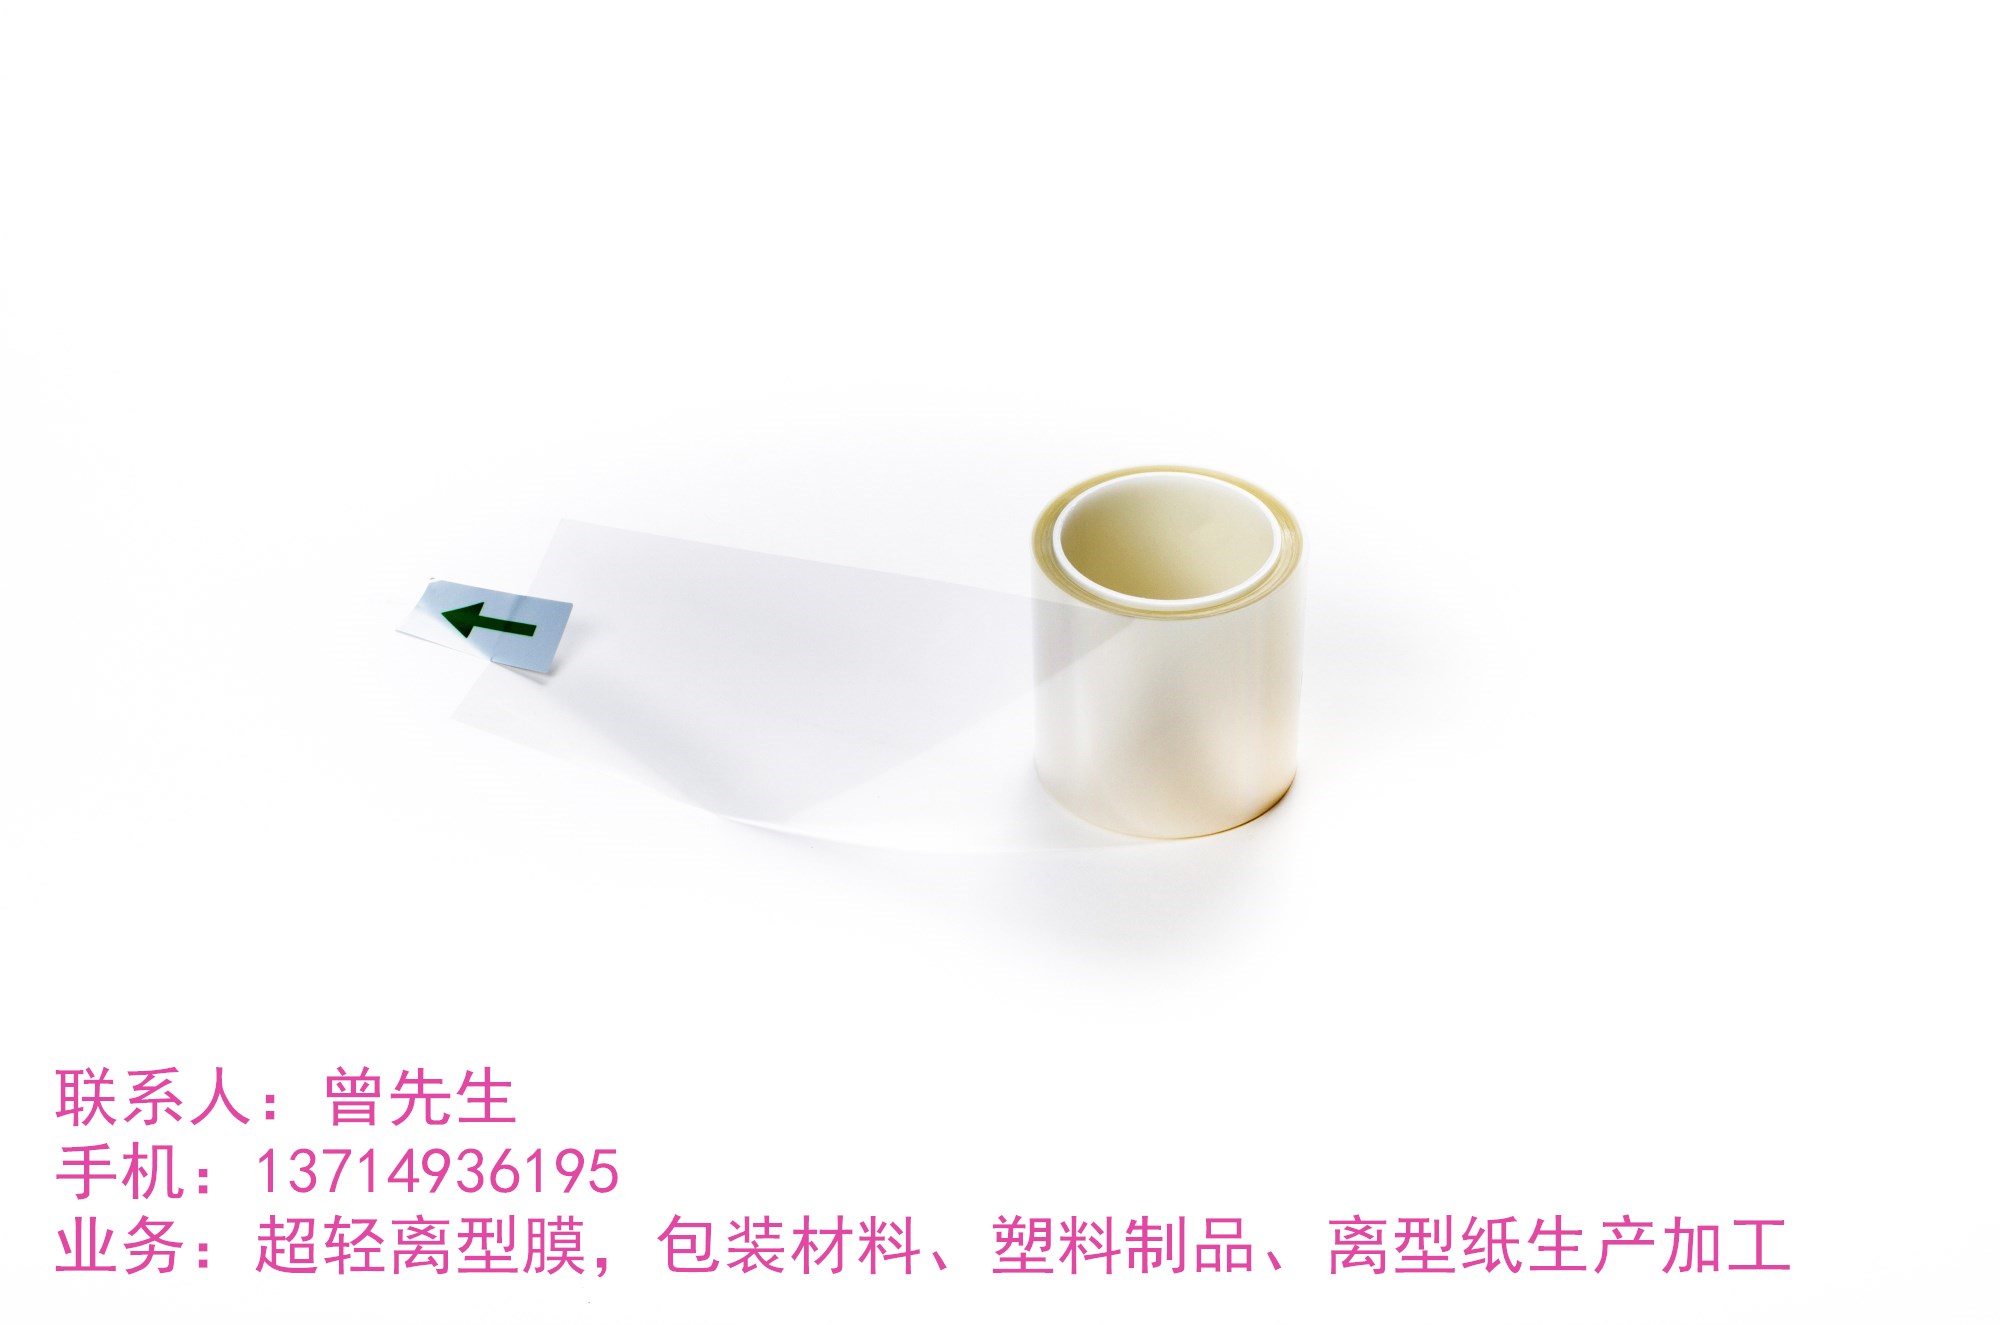 深圳市超轻离型膜生产厂家 专业的检测设备